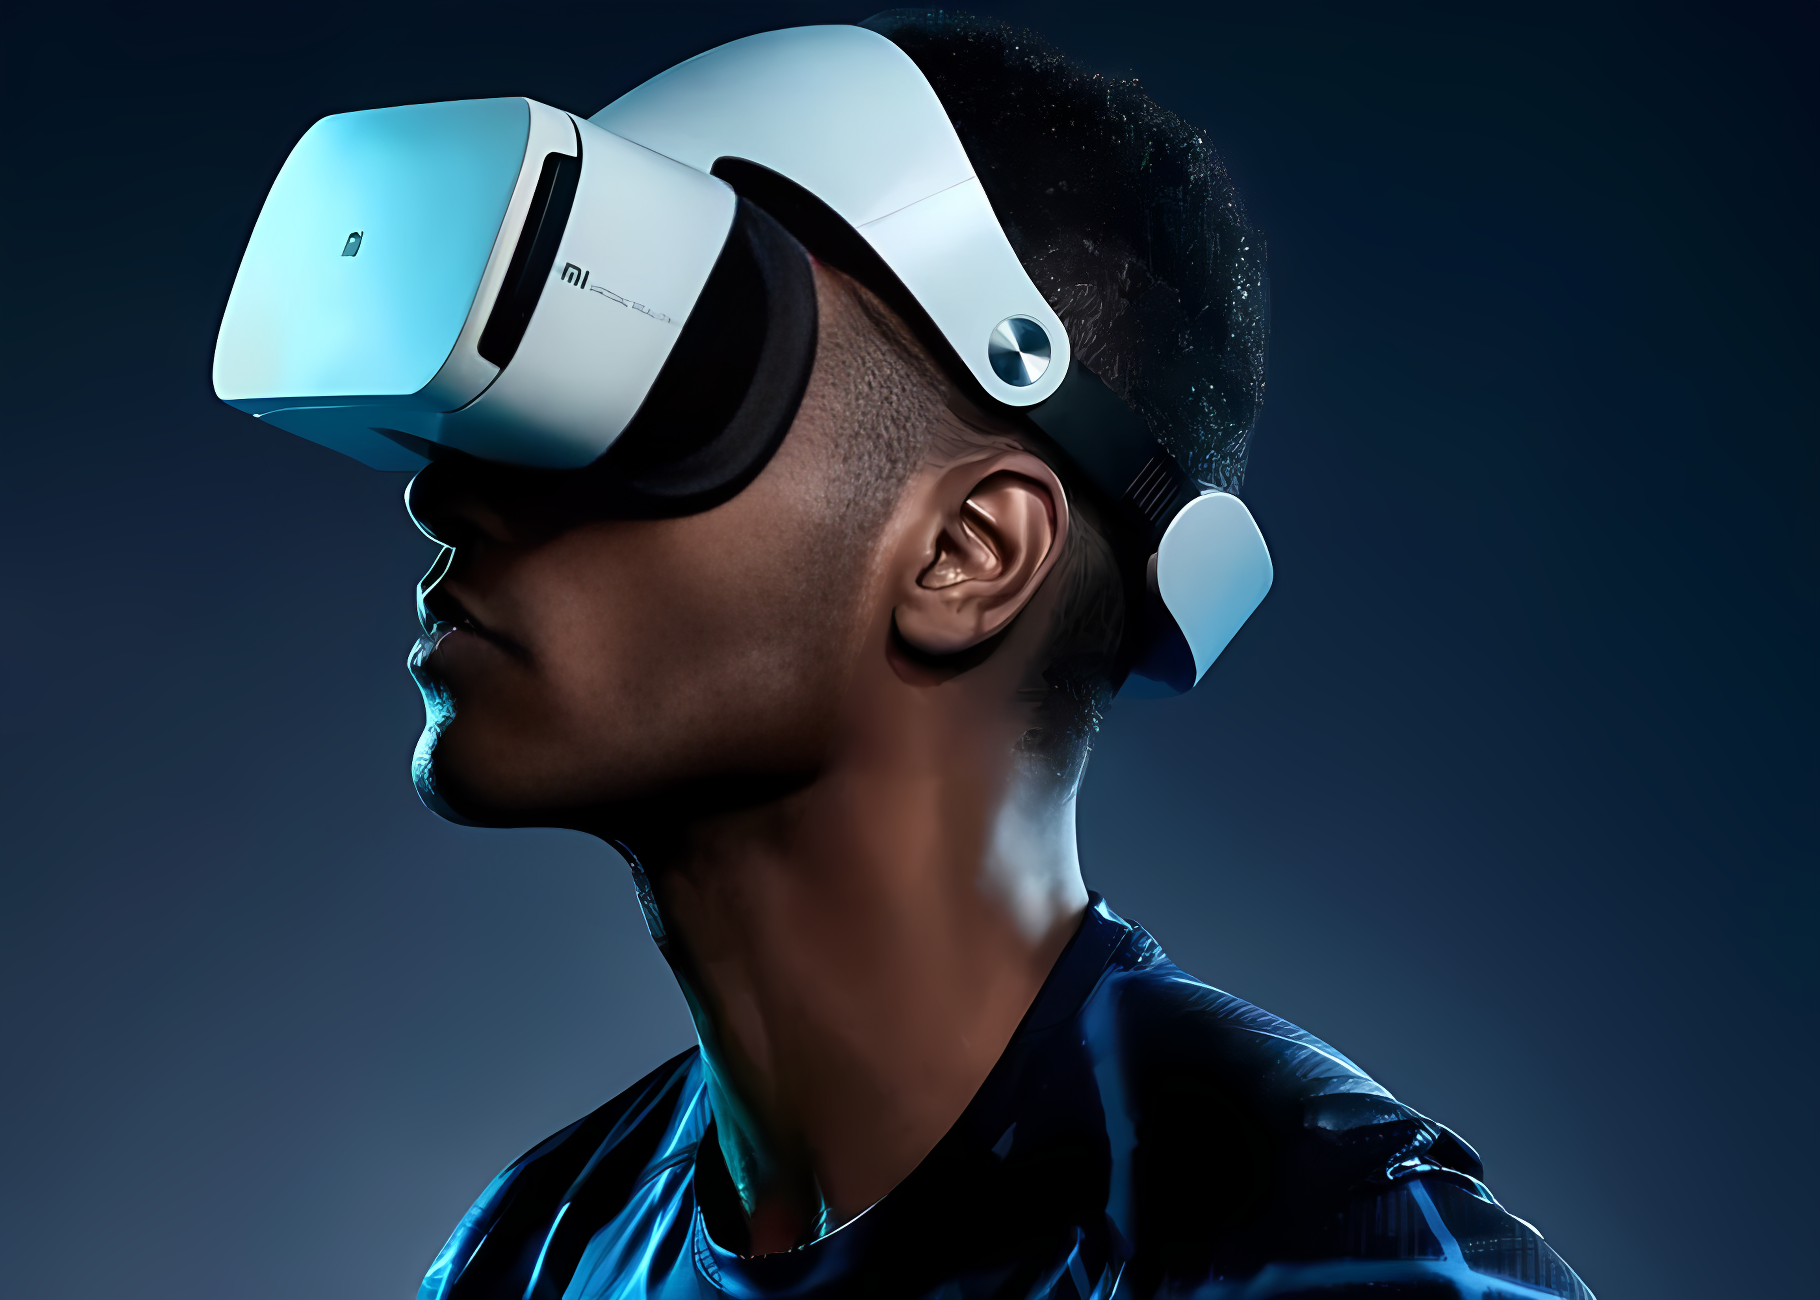 图片展示了一位男士戴着虚拟现实（VR）头盔，专注地体验着虚拟世界，背景为深色调。